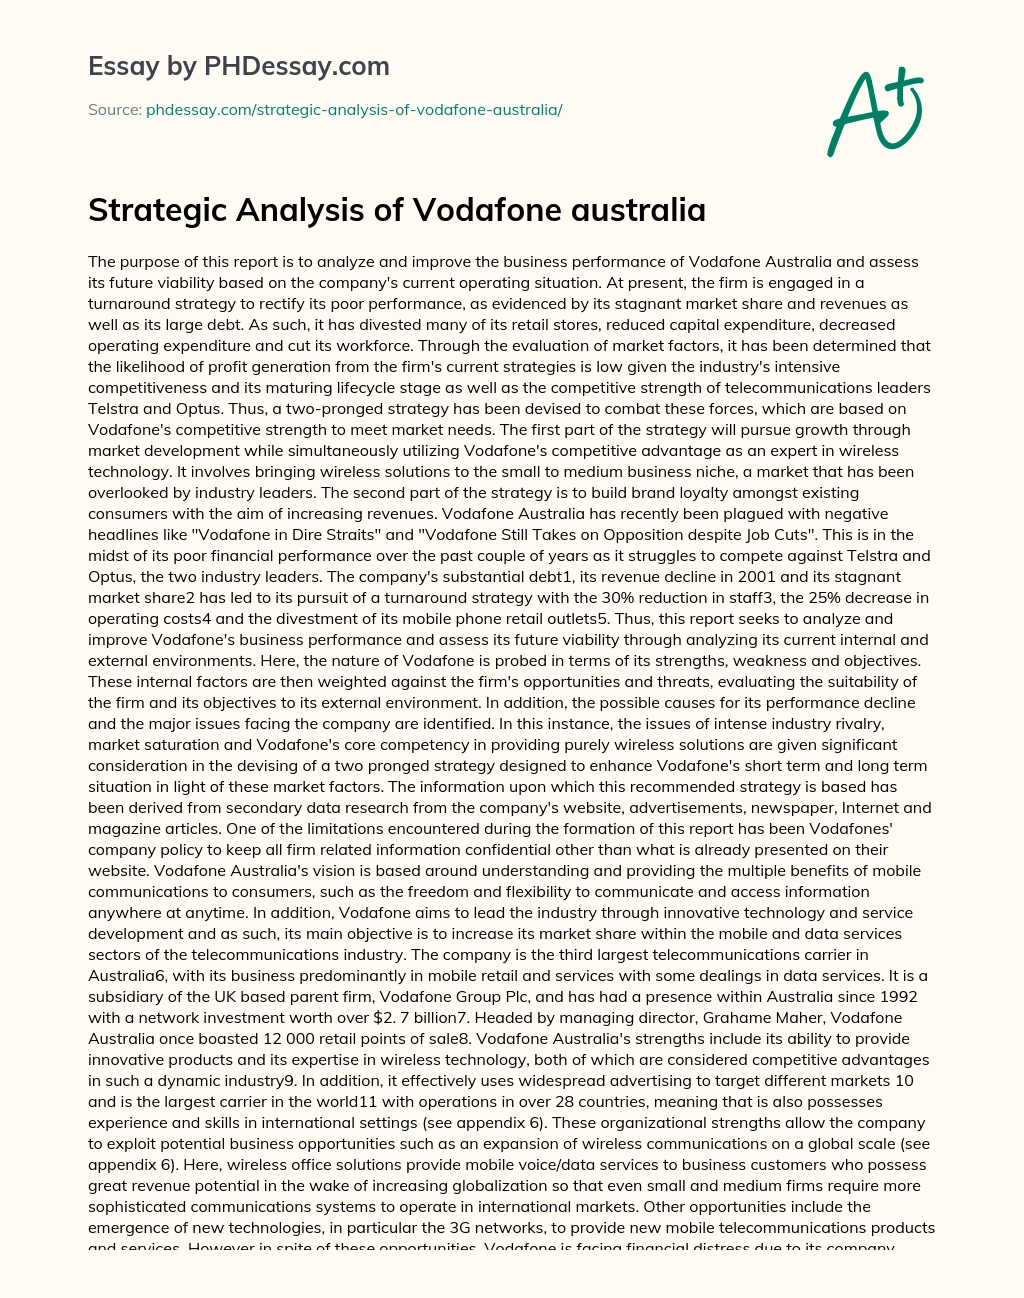 Strategic Analysis of Vodafone australia essay